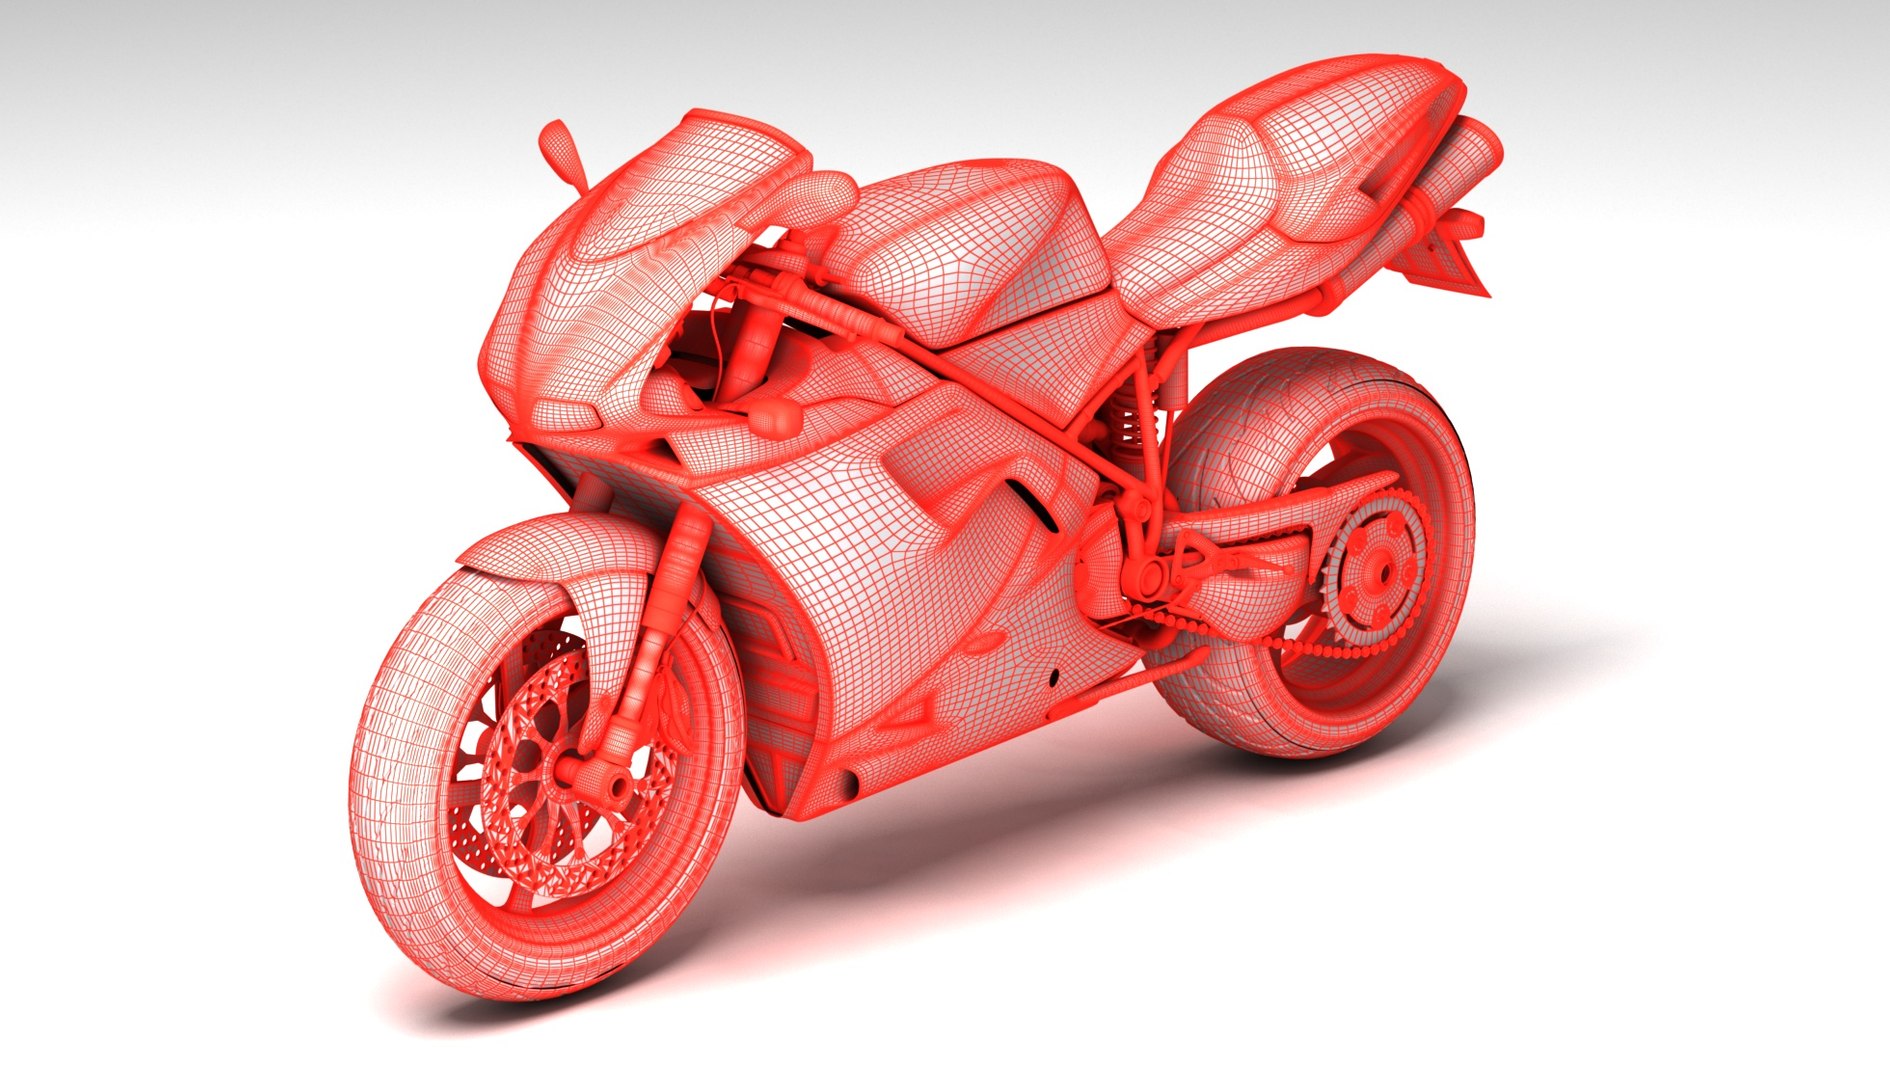 Ducati 748 Motos Desportivas 2004 3D model - Baixar Veículos no